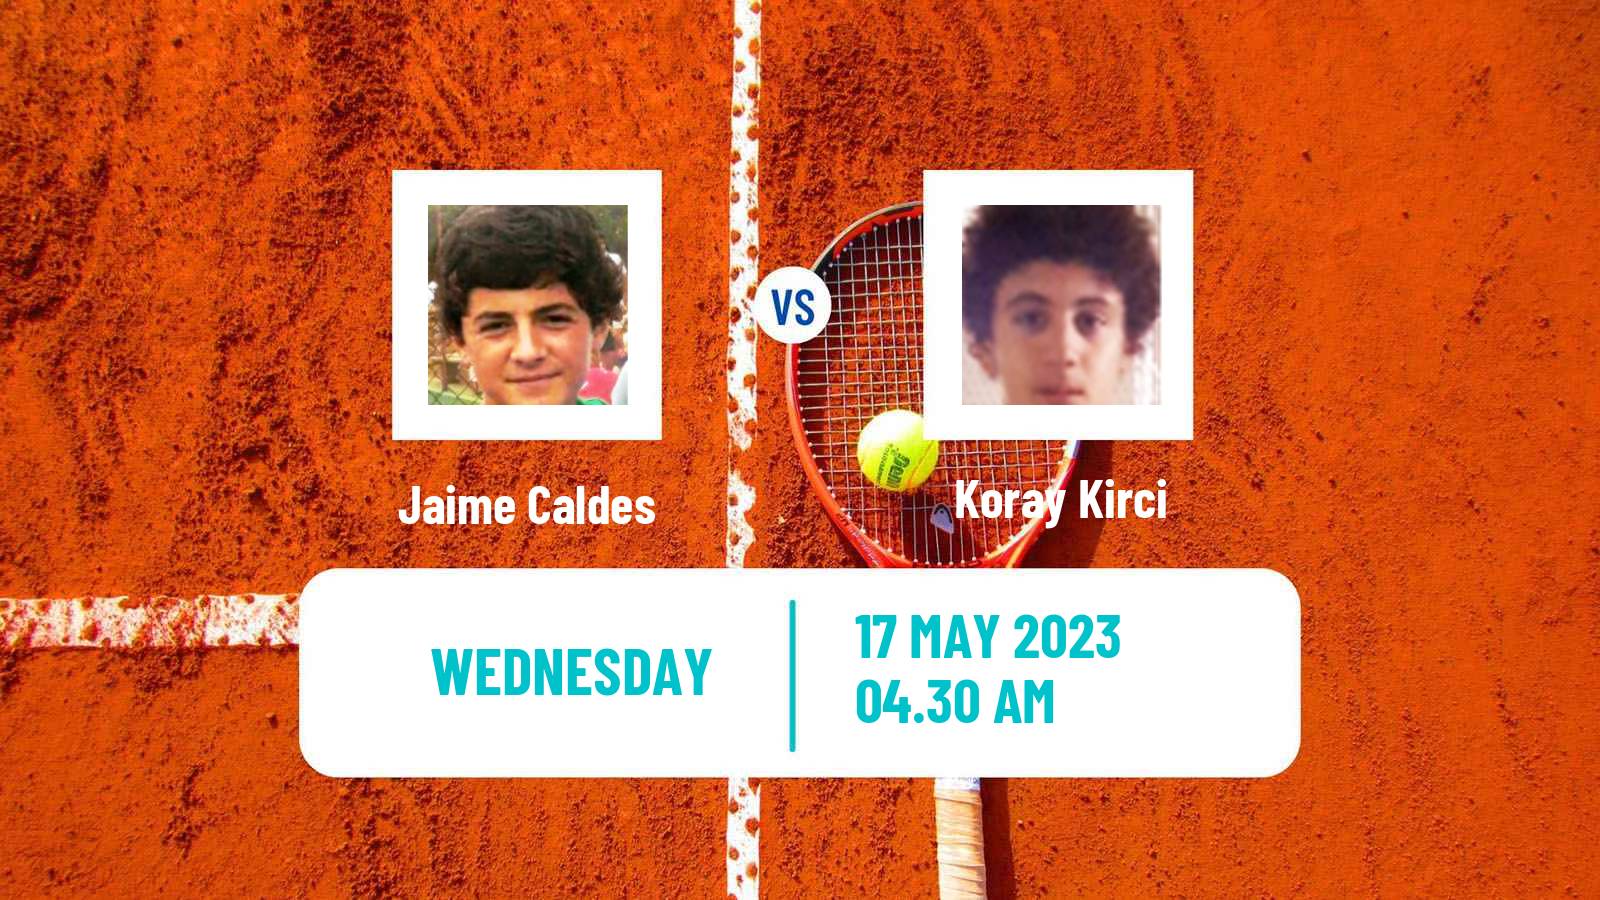 Tennis ITF M15 Antalya 16 Men Jaime Caldes - Koray Kirci